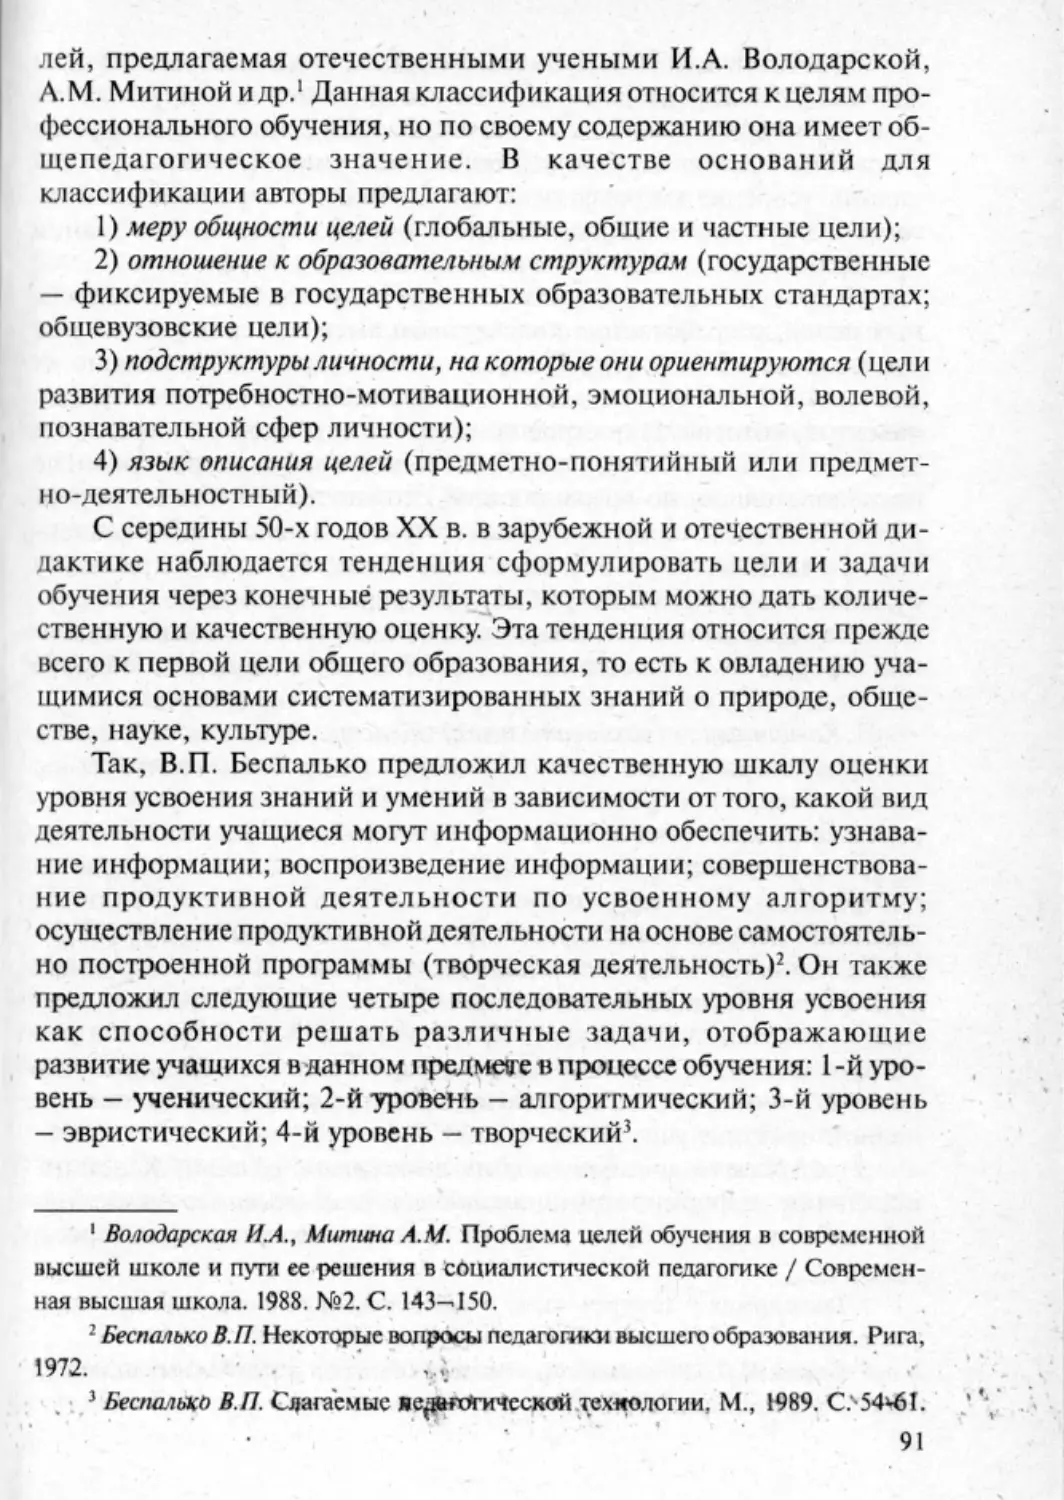 Загрекова Л.В., Николаева В.В - 0092